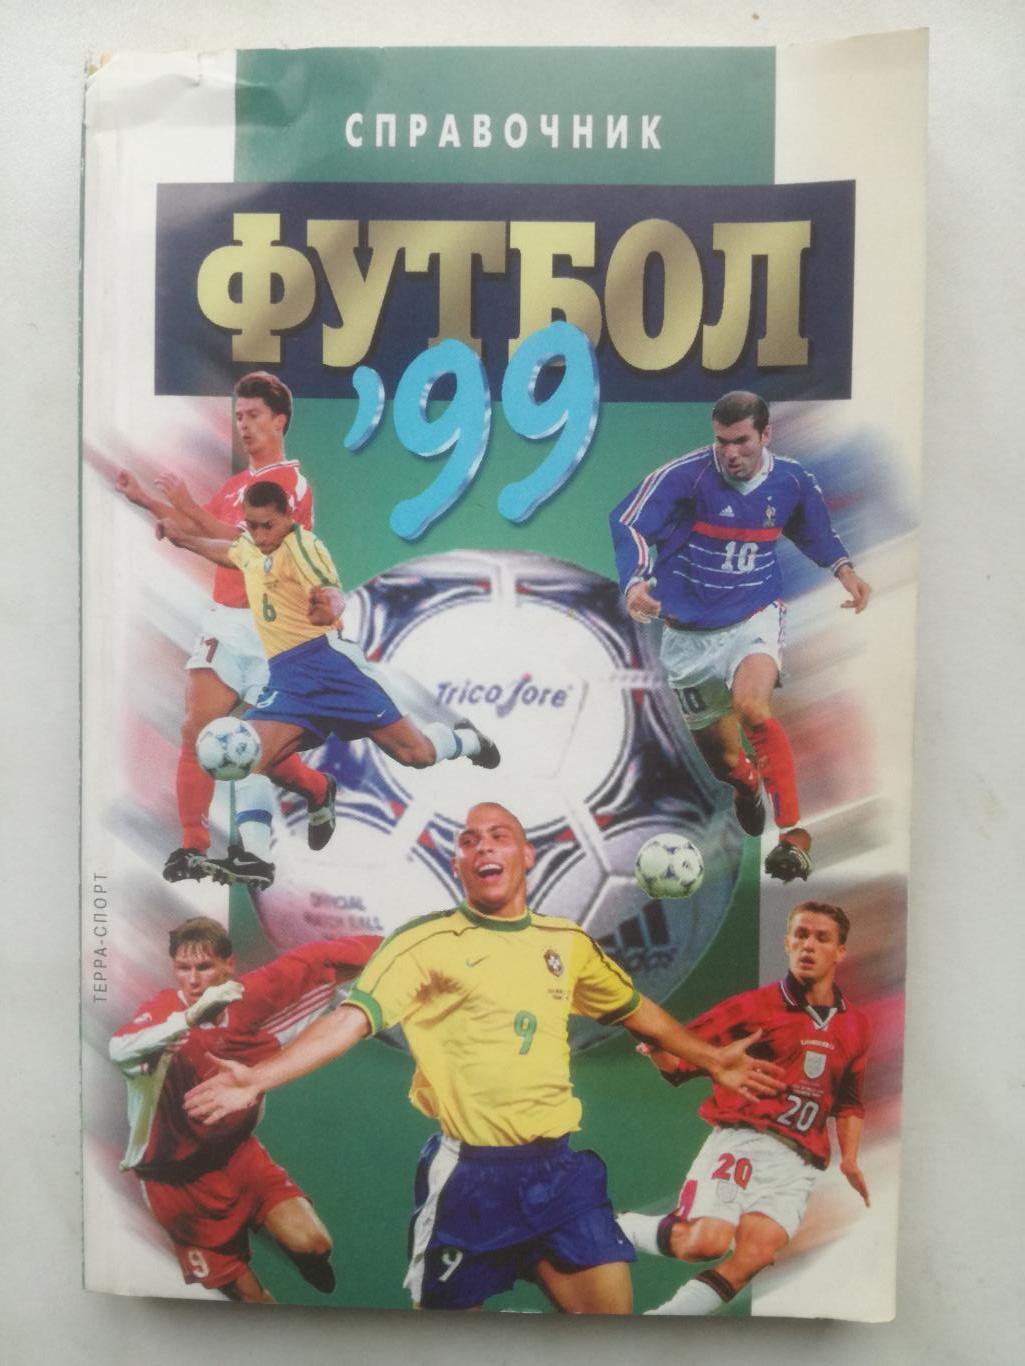 календарь-справочник, Москва 1999, Терра-спорт